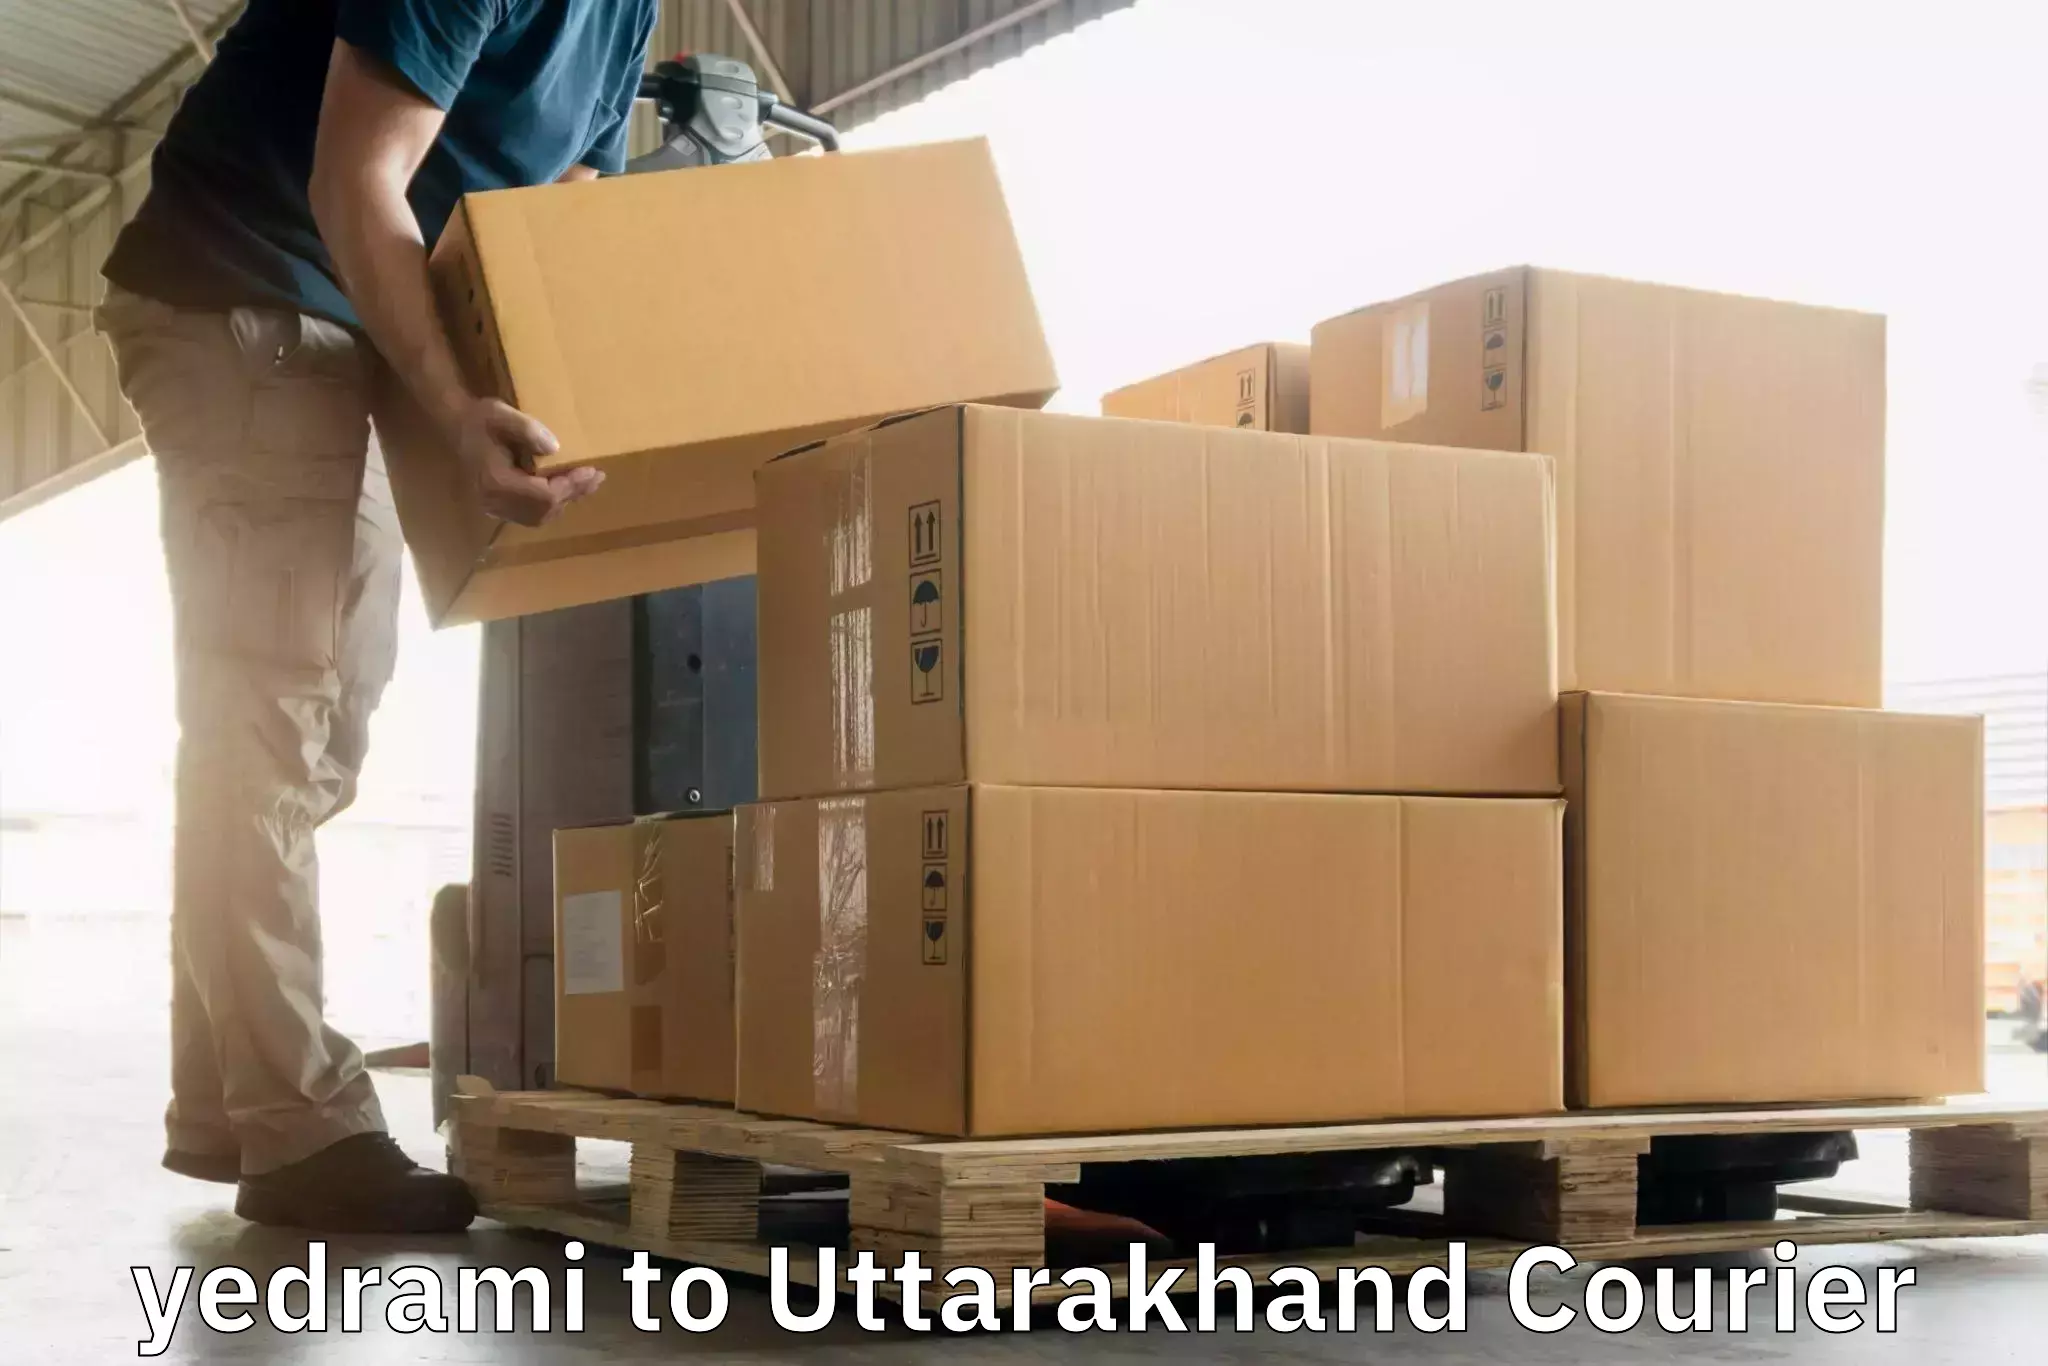 Urban courier service in yedrami to Kotdwara